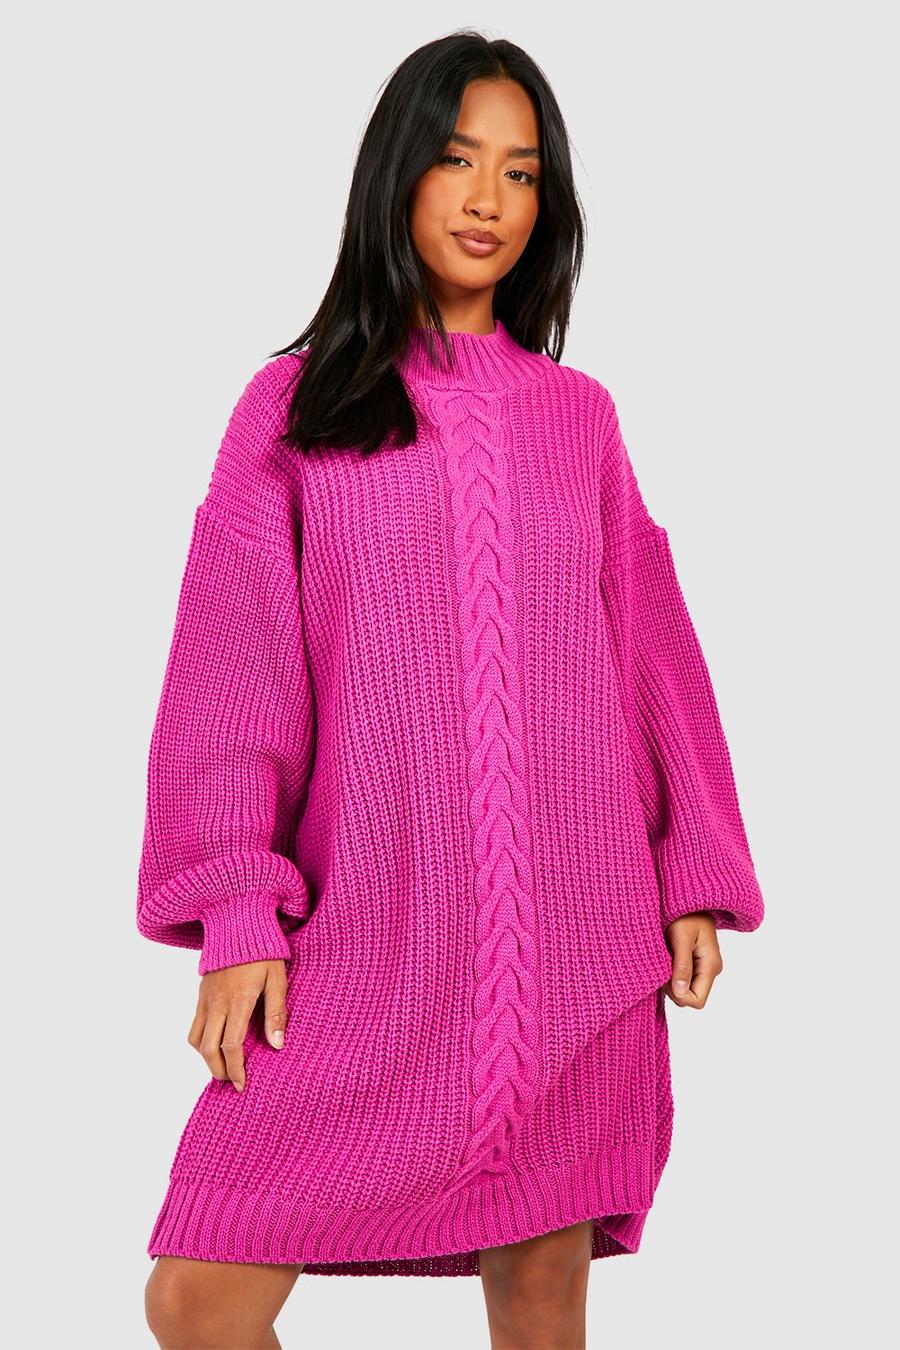 Petite - Robe courte en maille torsadée, Hot pink